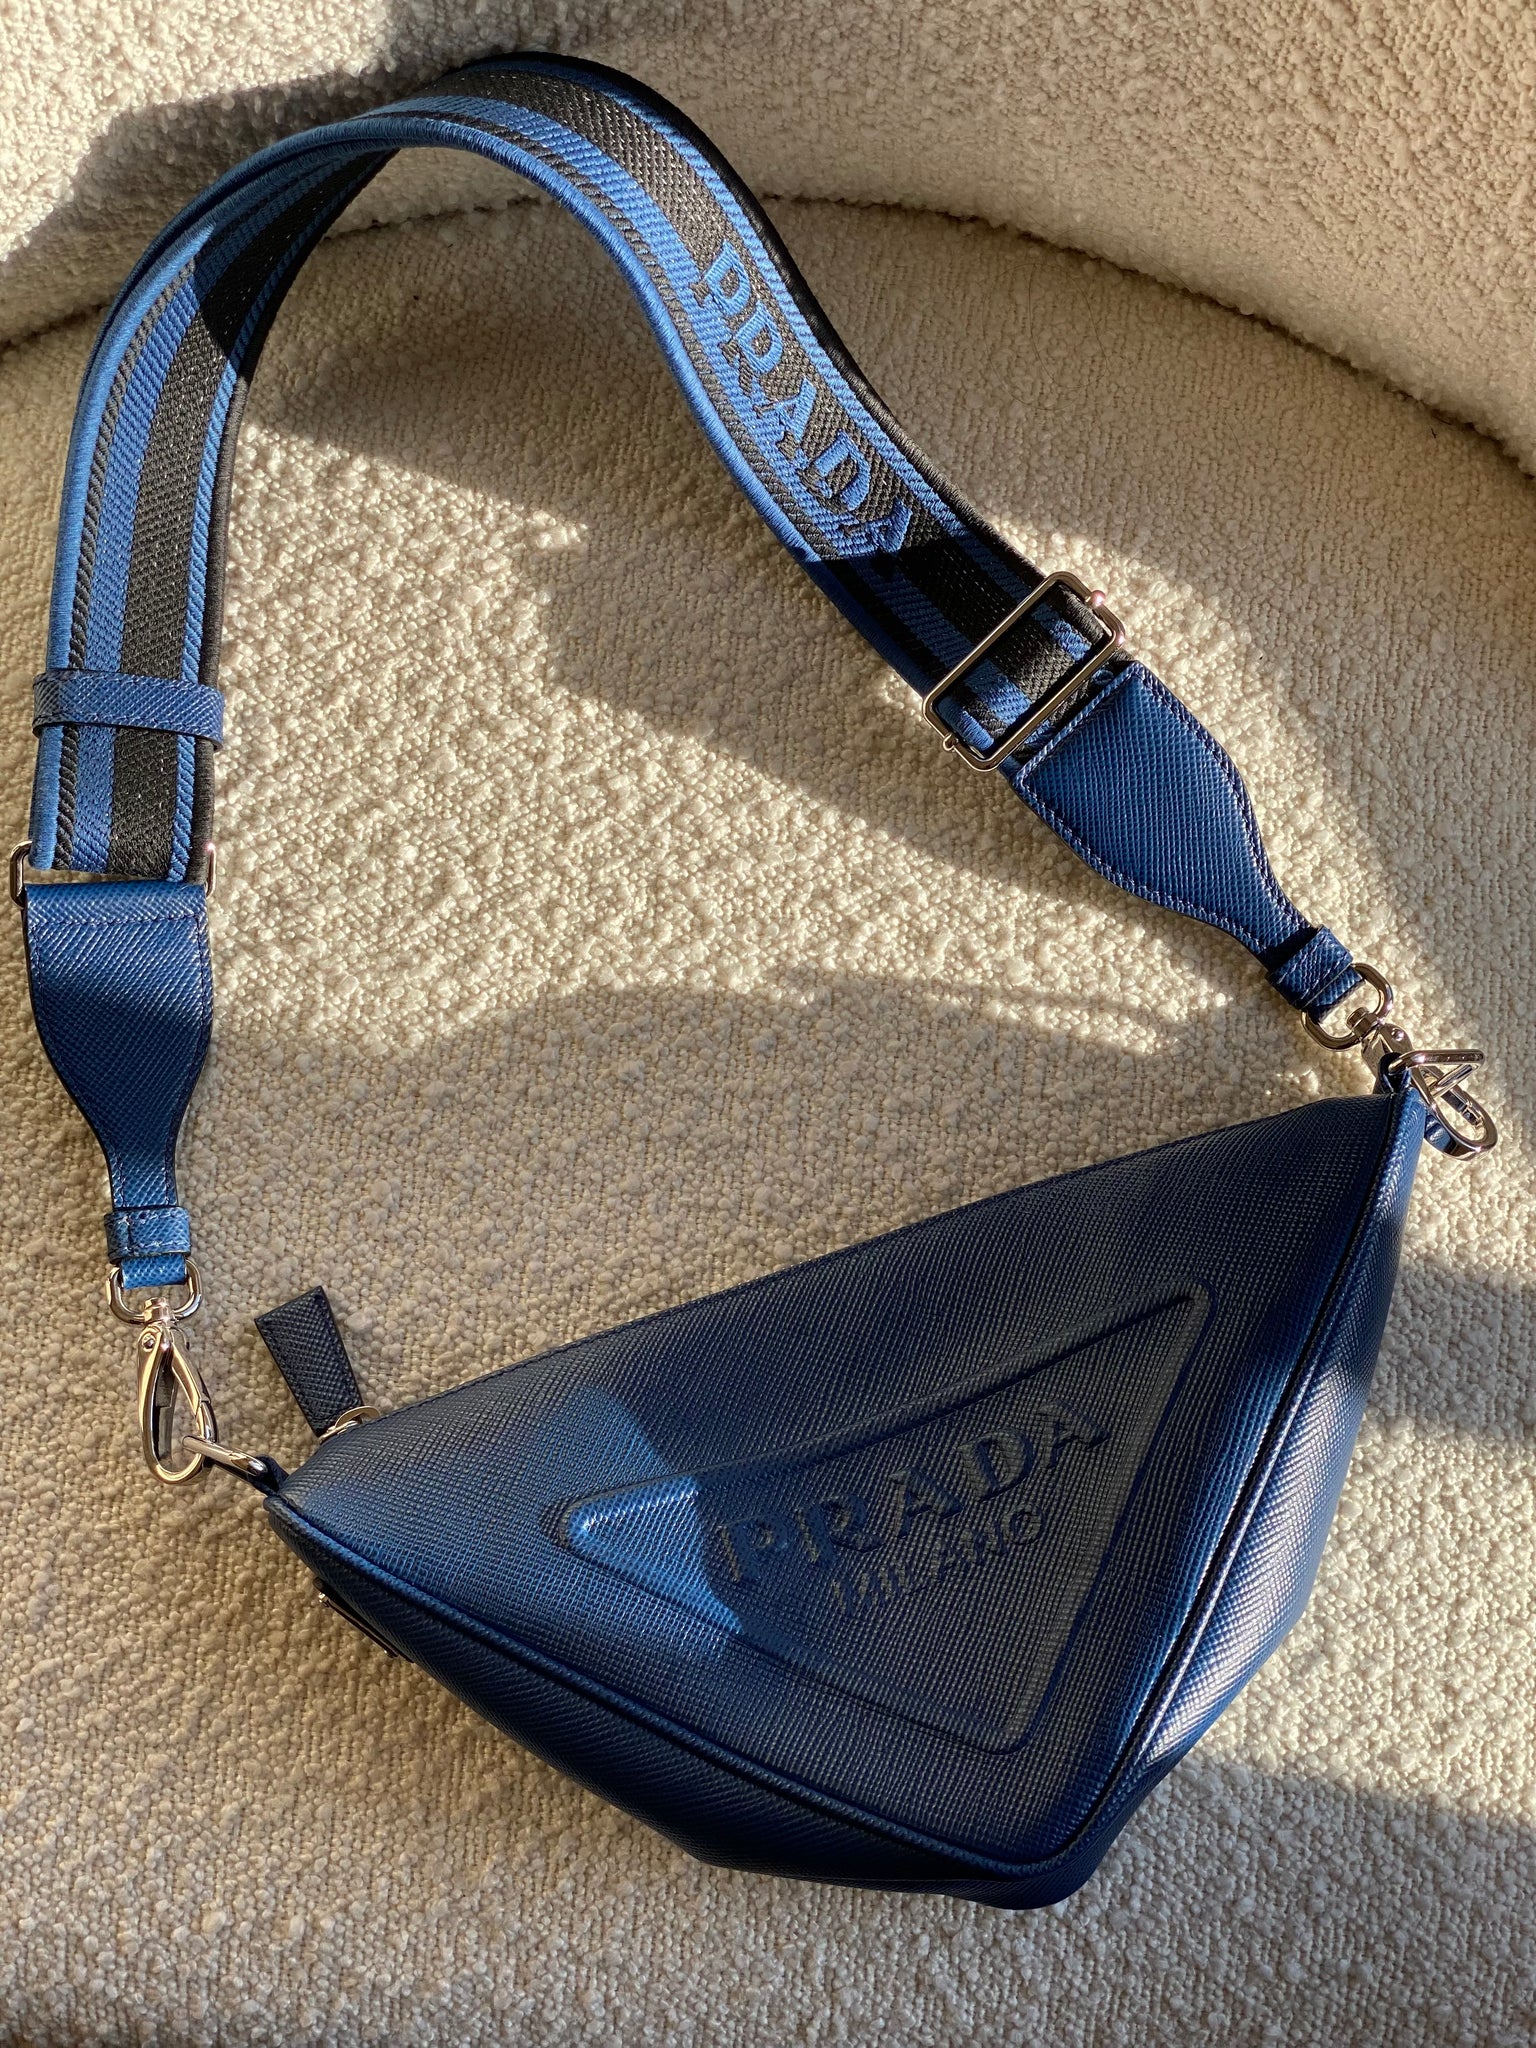 Prada Bandoliera Handbag  Rent Prada Handbags for $55/month